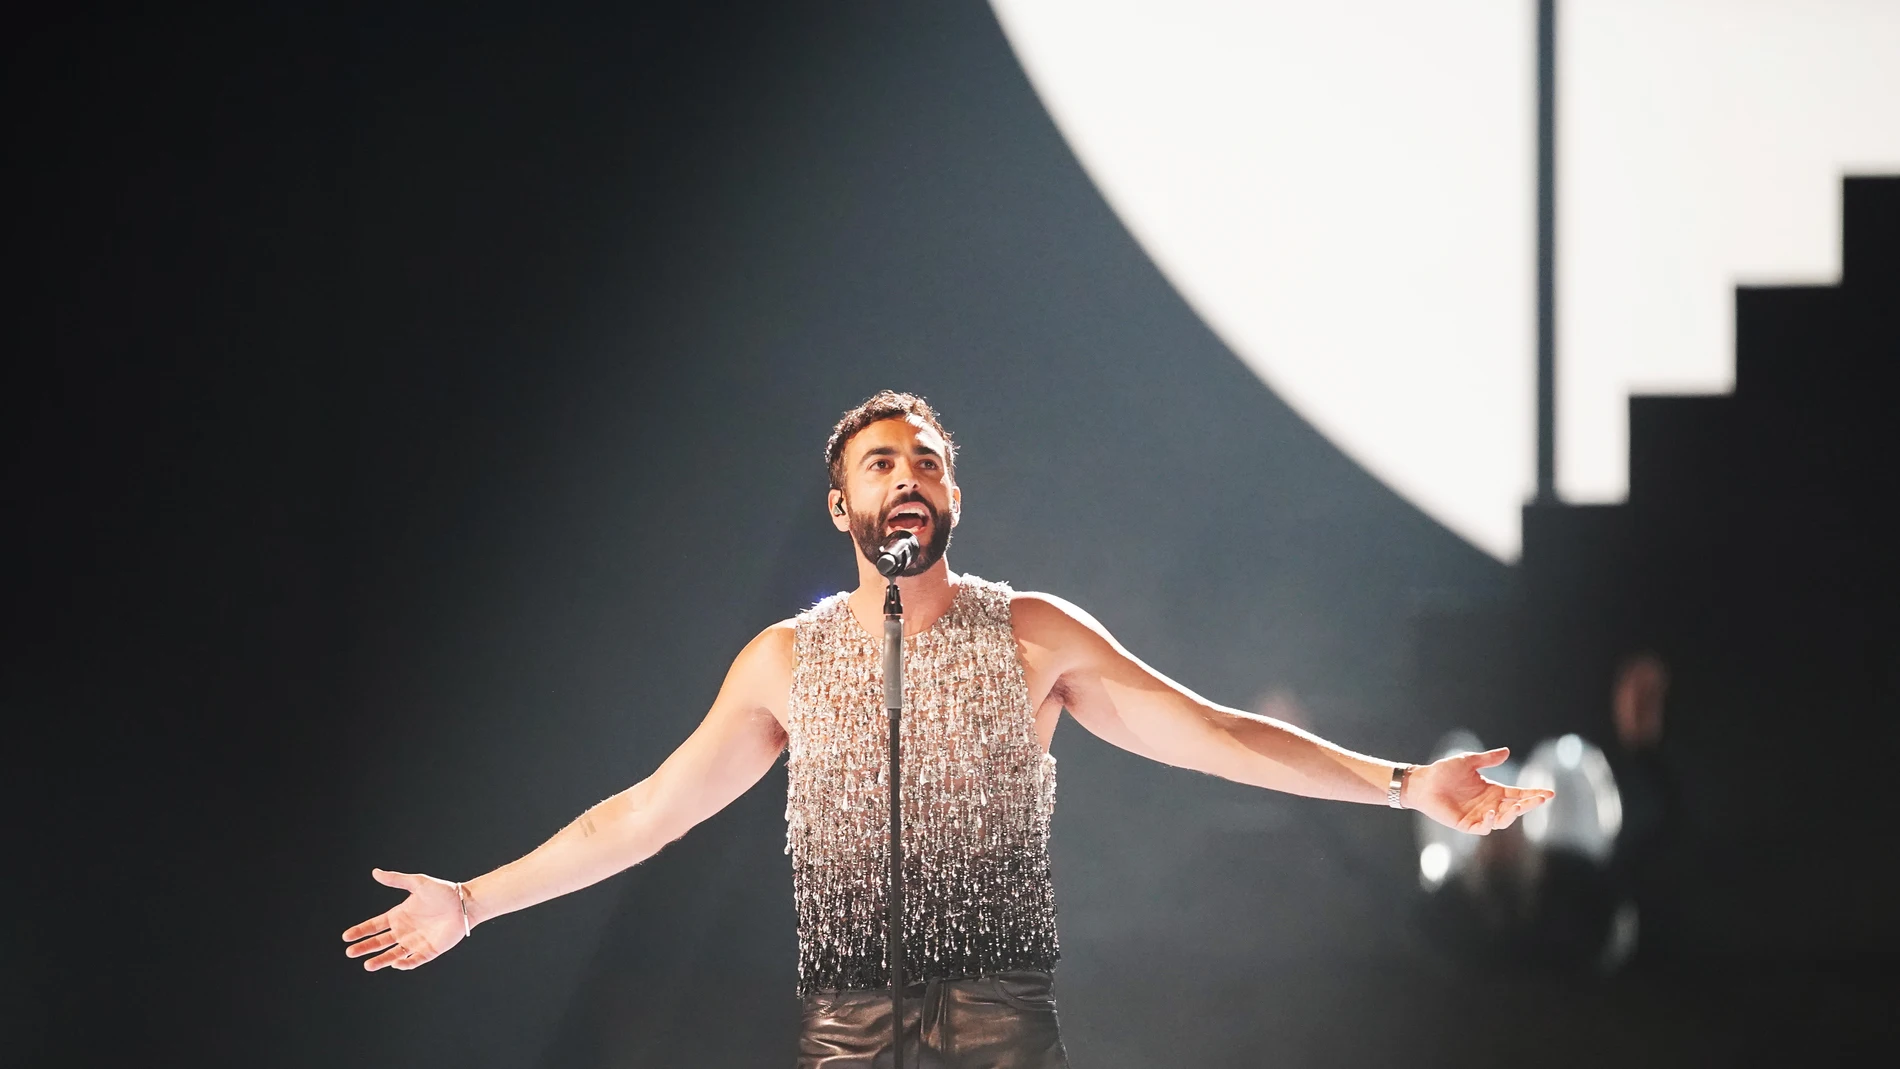 diámetro reporte Ellos Marco Mengoni, sobre la bandera LGTBIQ+ en Eurovisión: "Son las voces de  nuestra sociedad" | Europa FM